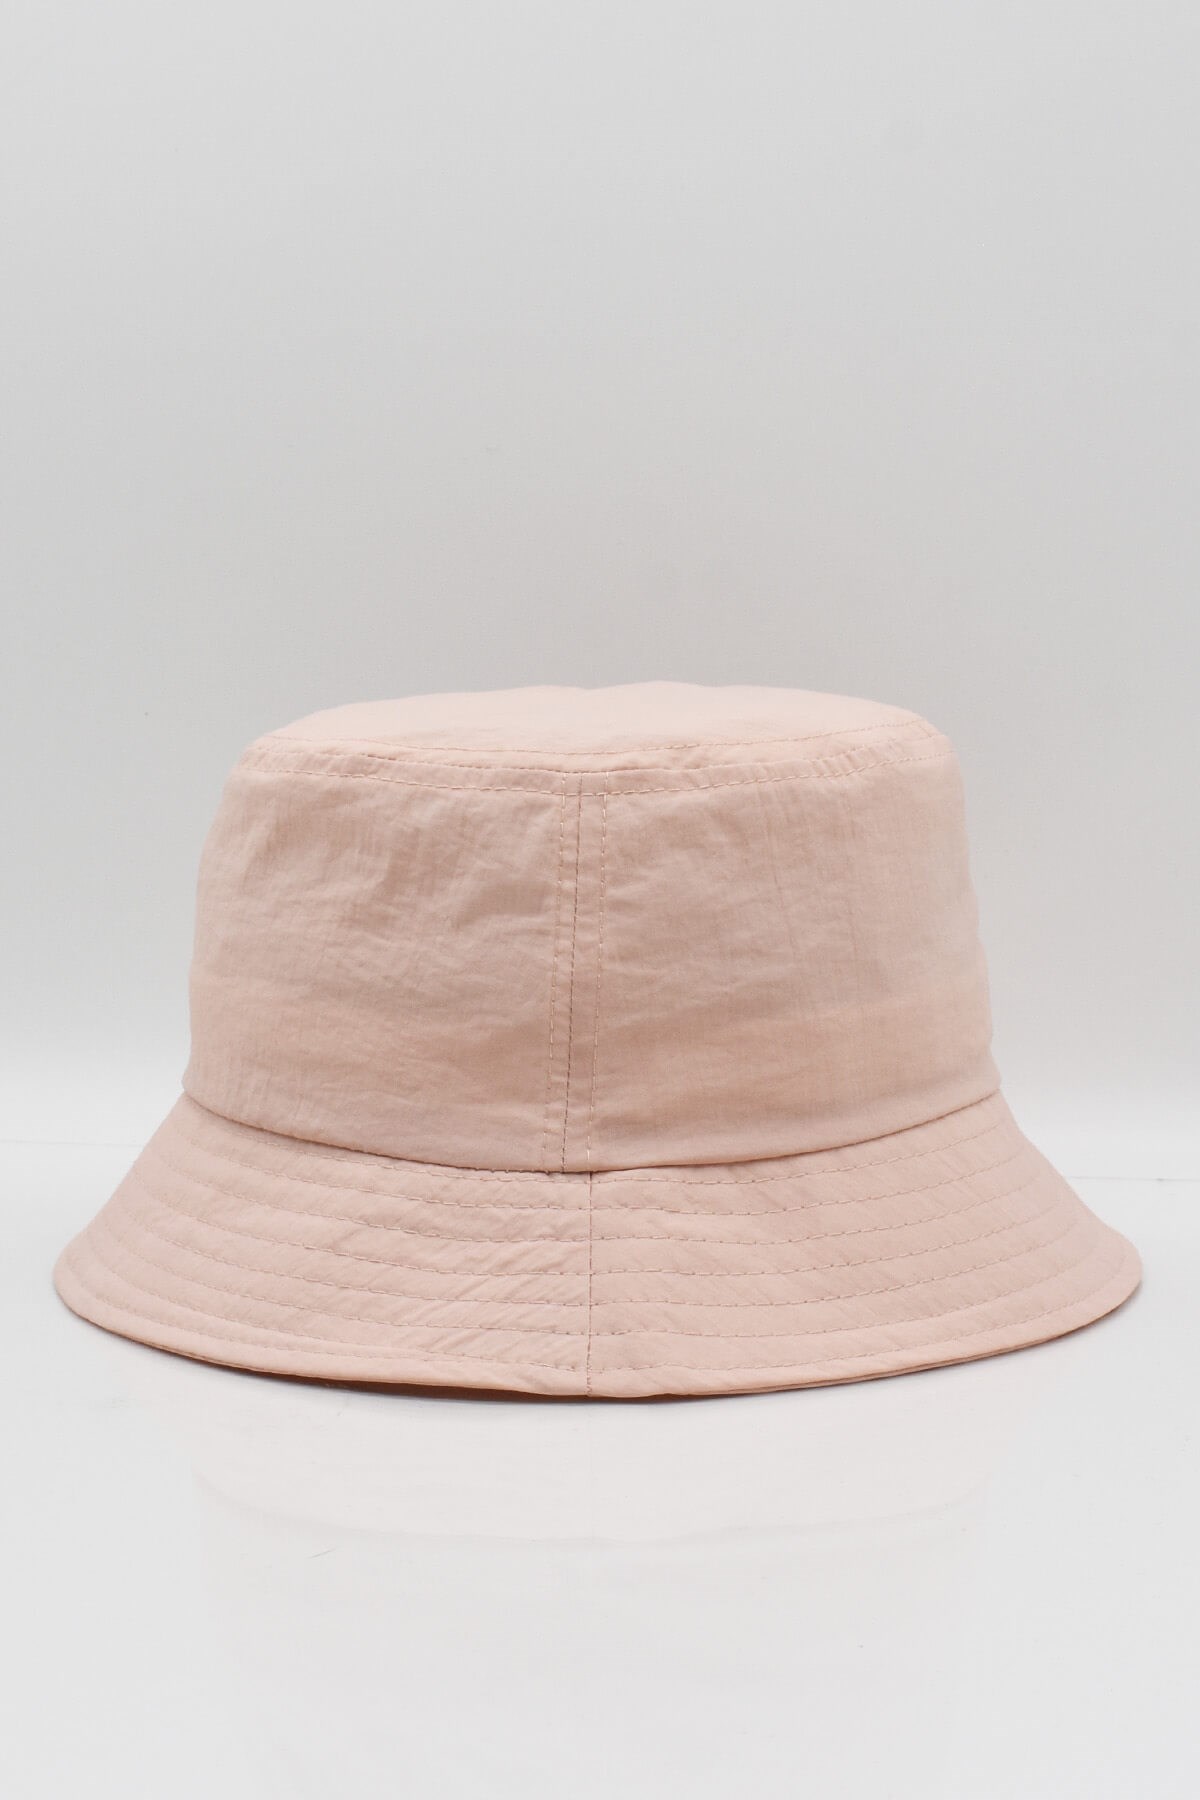 Külah Kadın Teknik Kumaşlı Pembe Bucket Şapka KLH6941